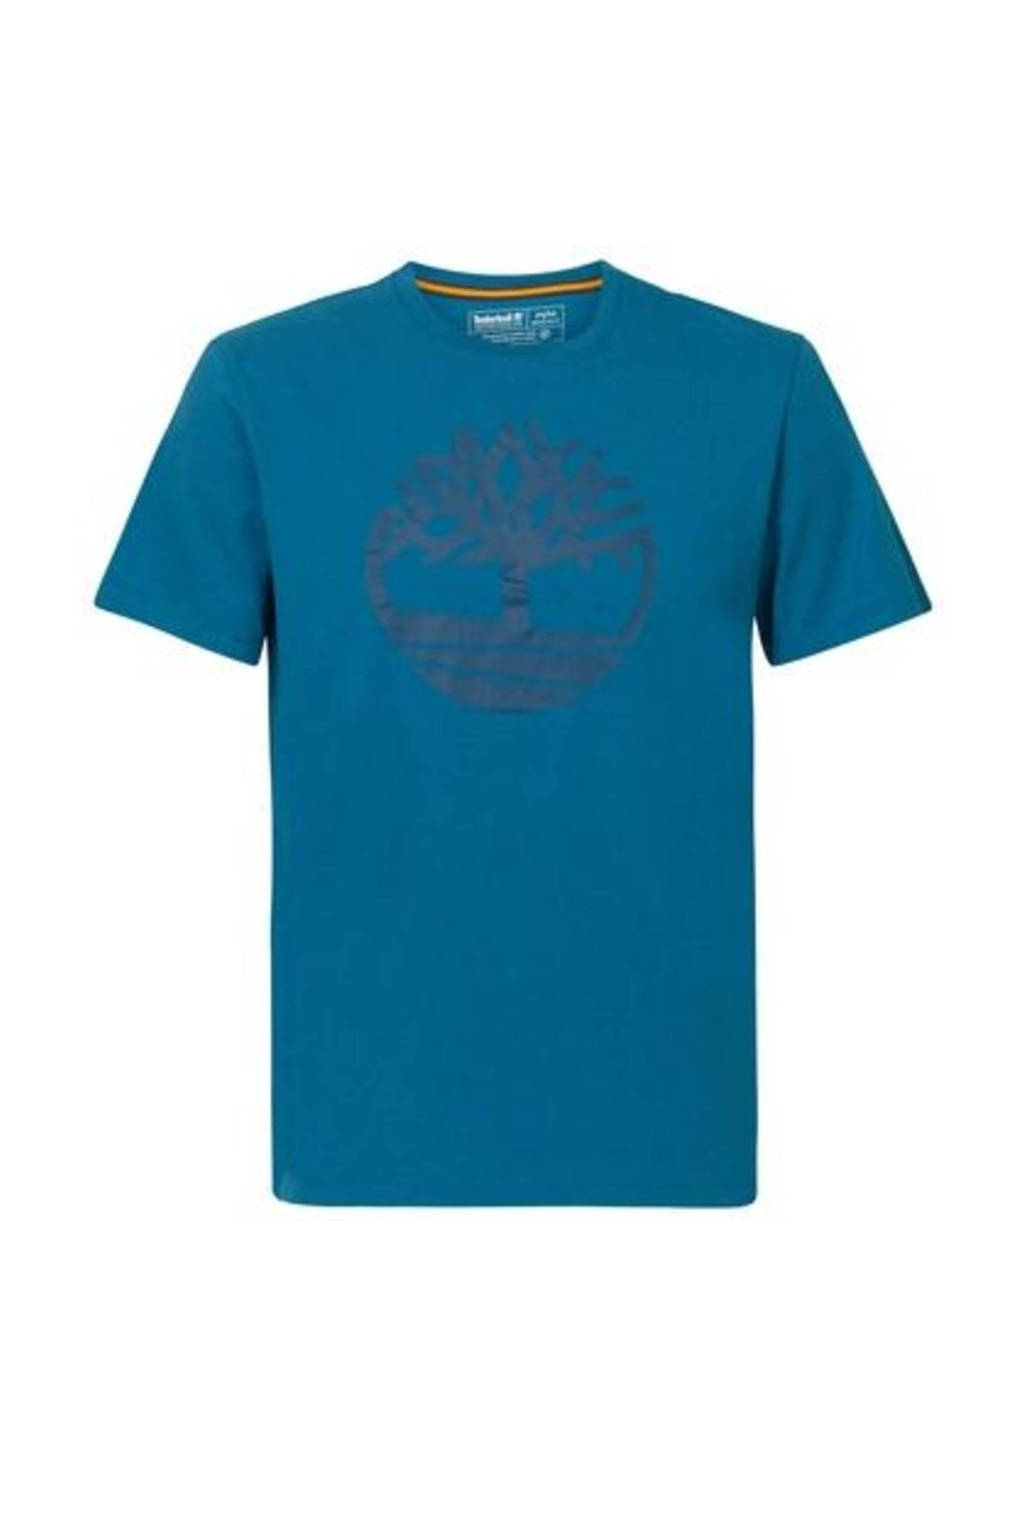 Blauwe heren Timberland T-shirt katoen met logo dessin, korte mouwen en ronde hals